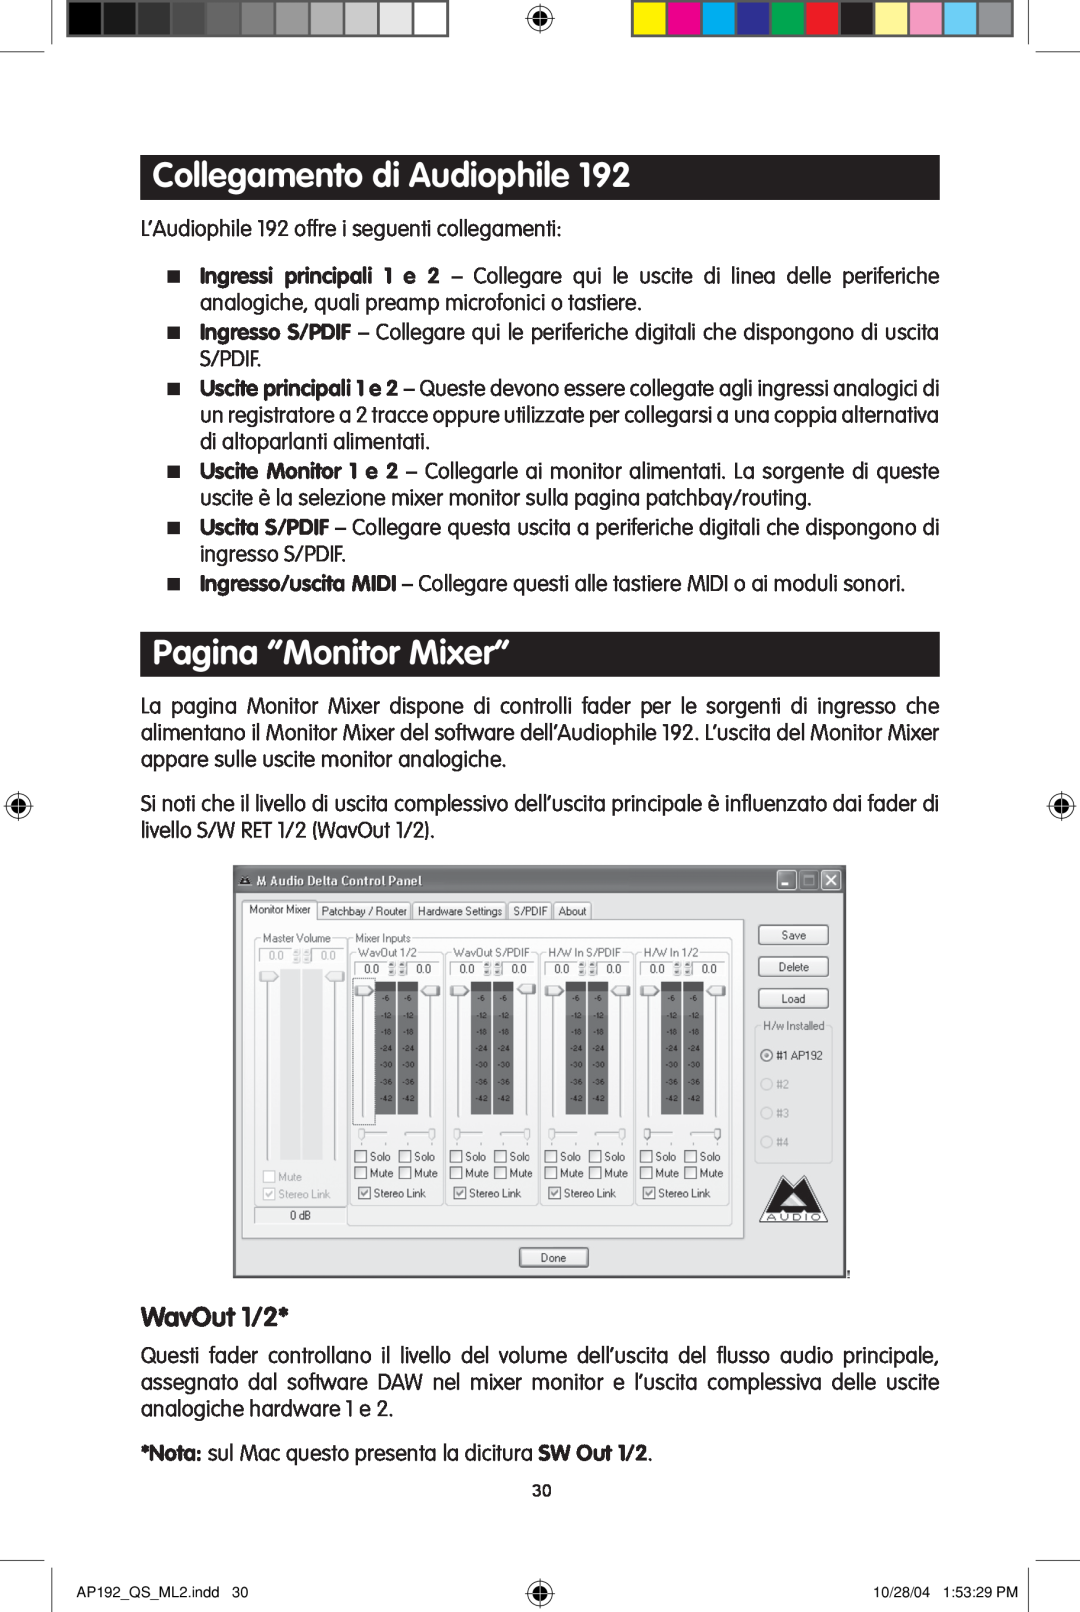 M-Audio 192s quick start Collegamento di Audiophile, Pagina “Monitor Mixer”, WavOut 1/2 